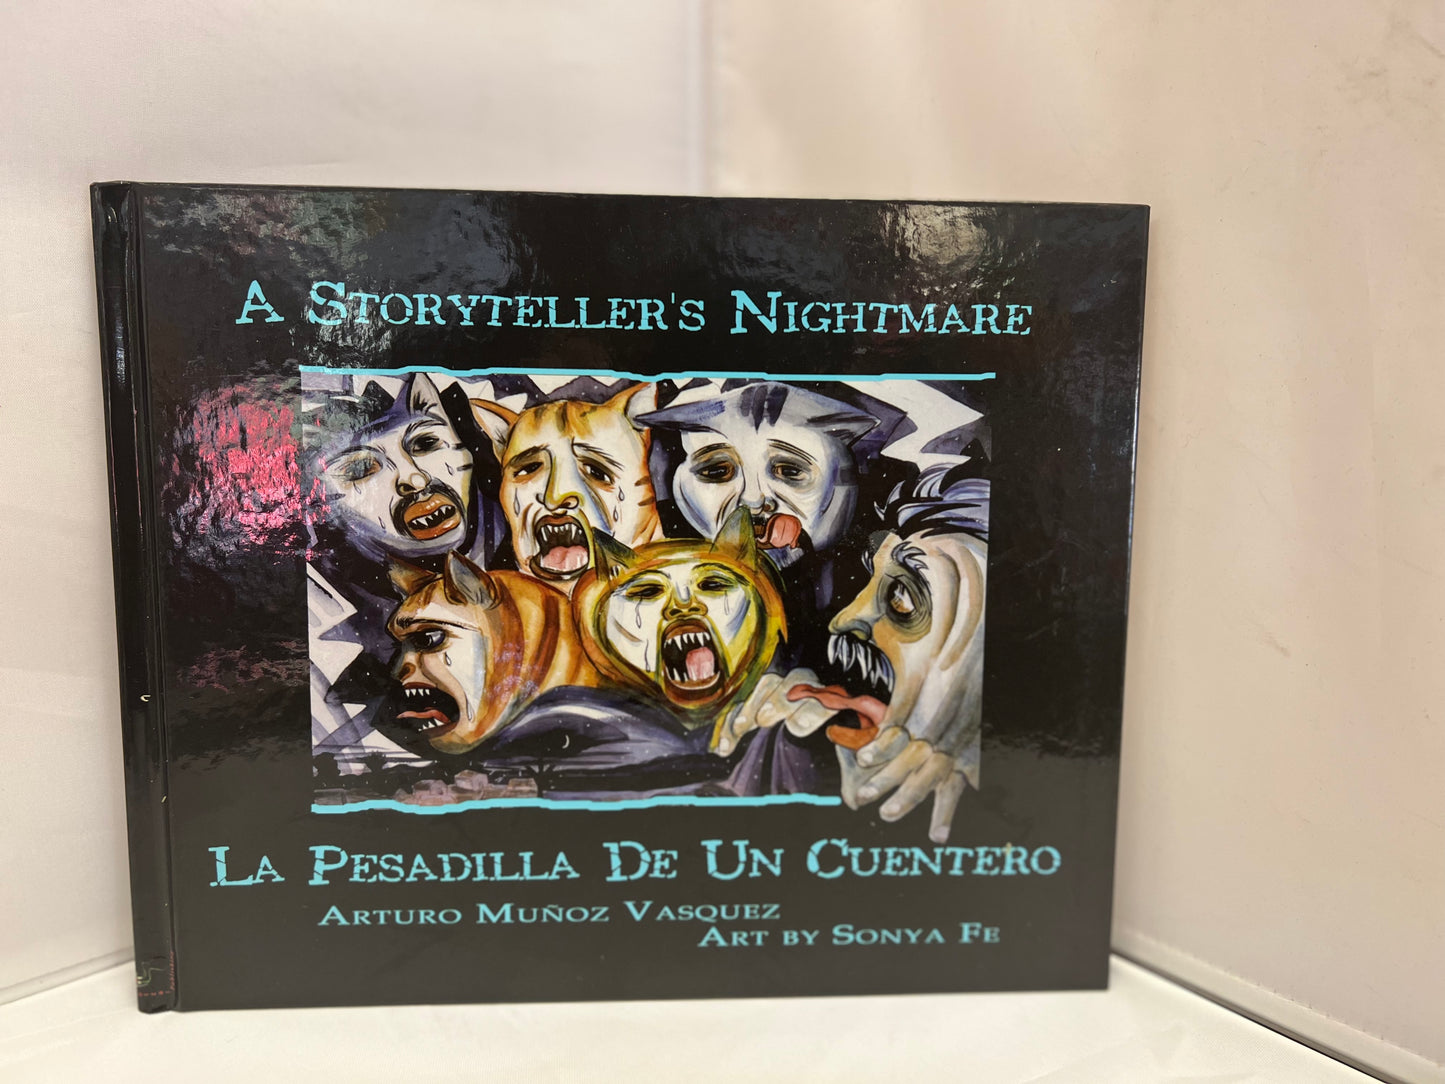 "A Storyteller's Nightmare" by Arturo Munoz Vasquez